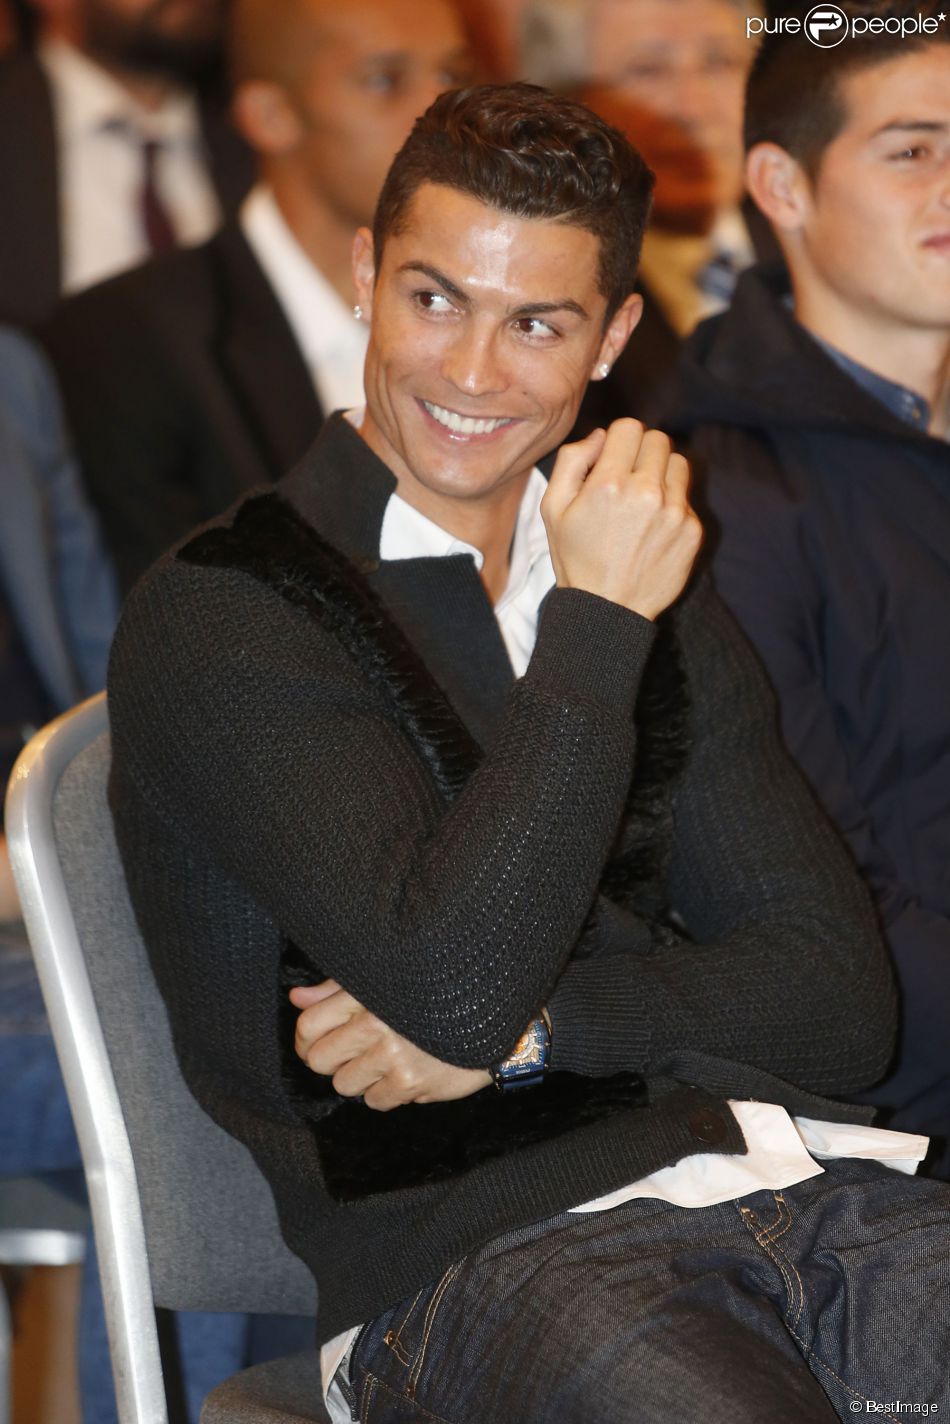  Cristiano Ronaldo - Cristiano Ronaldo assiste &amp;agrave; la pr&amp;eacute;sentation du livre&quot;La clave Mendes&quot; &amp;agrave; Madrid en Espagne le 22 janvier 2015.&amp;nbsp; 